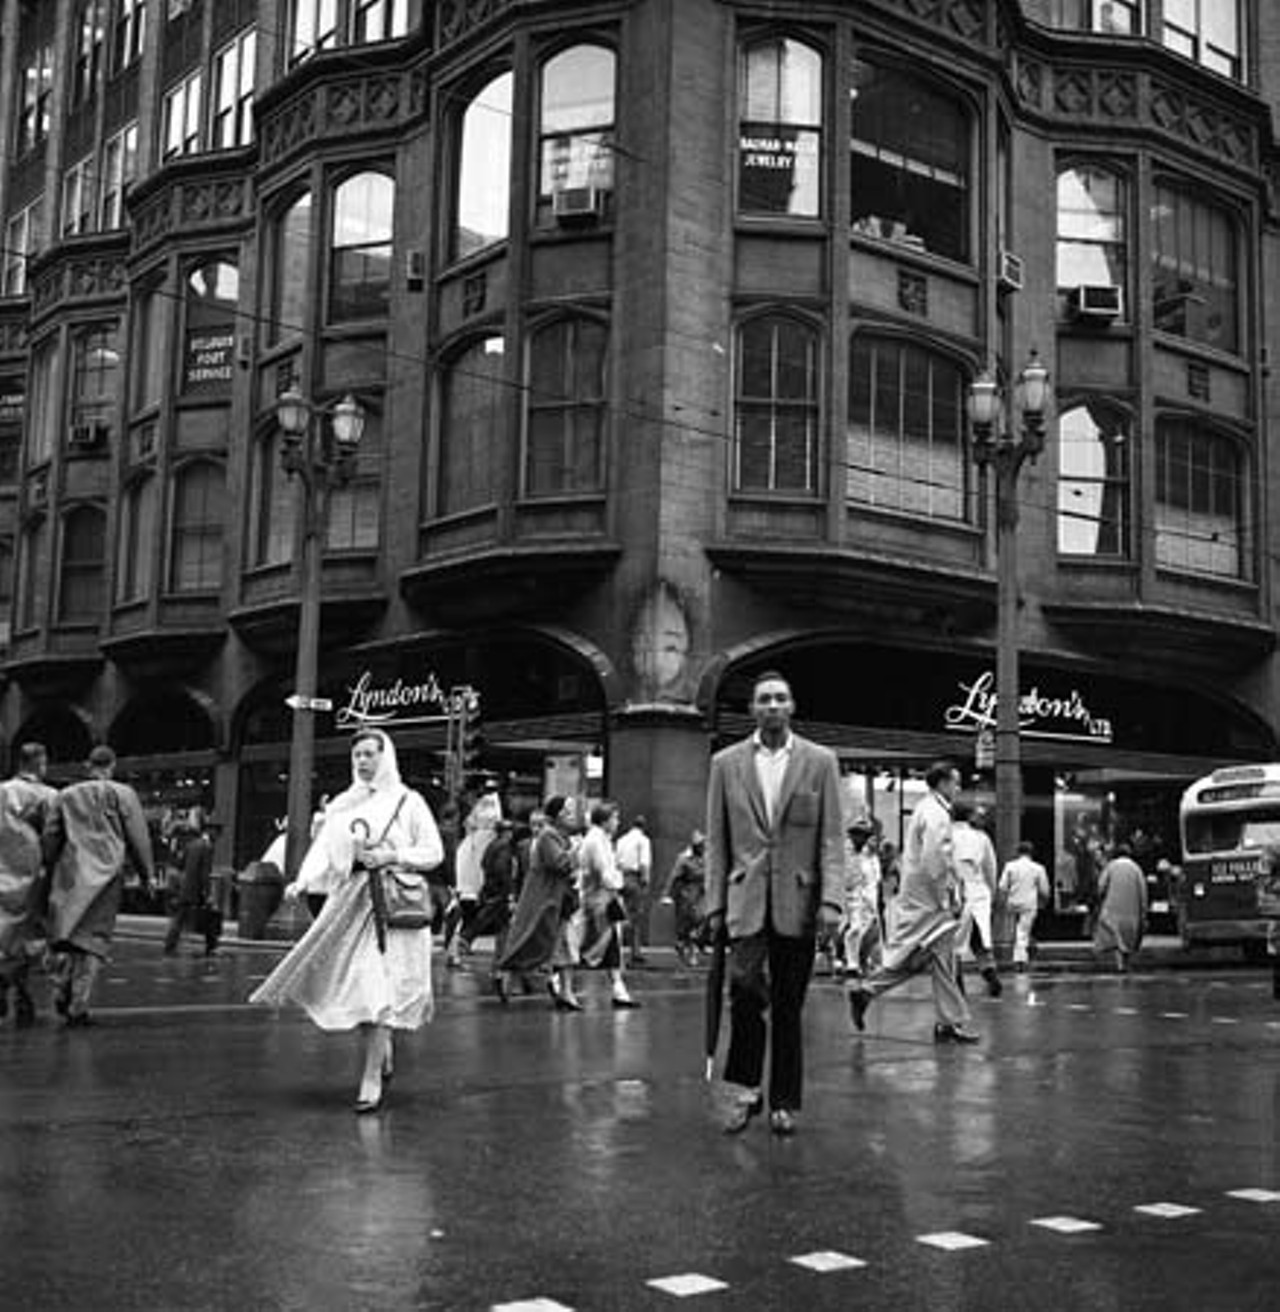 Downtown St. Louis - Vintage Image